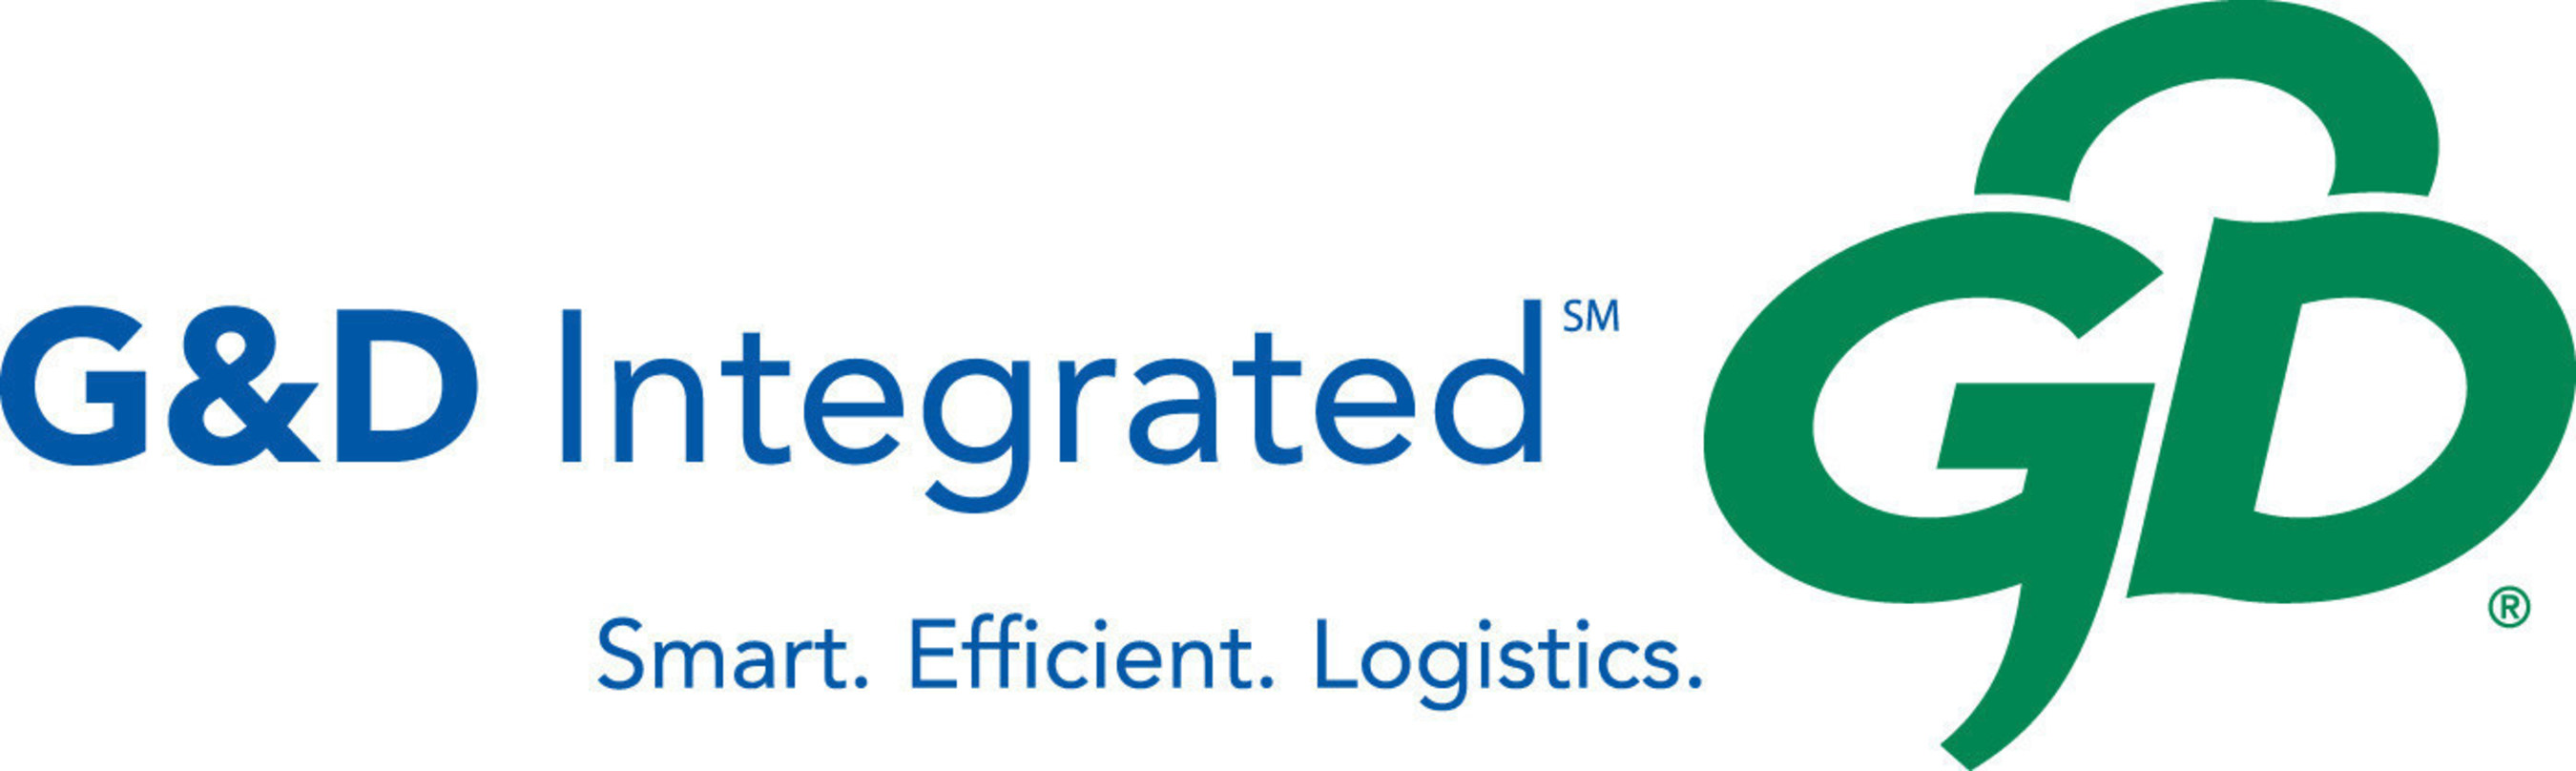 G&D Integrated logo.